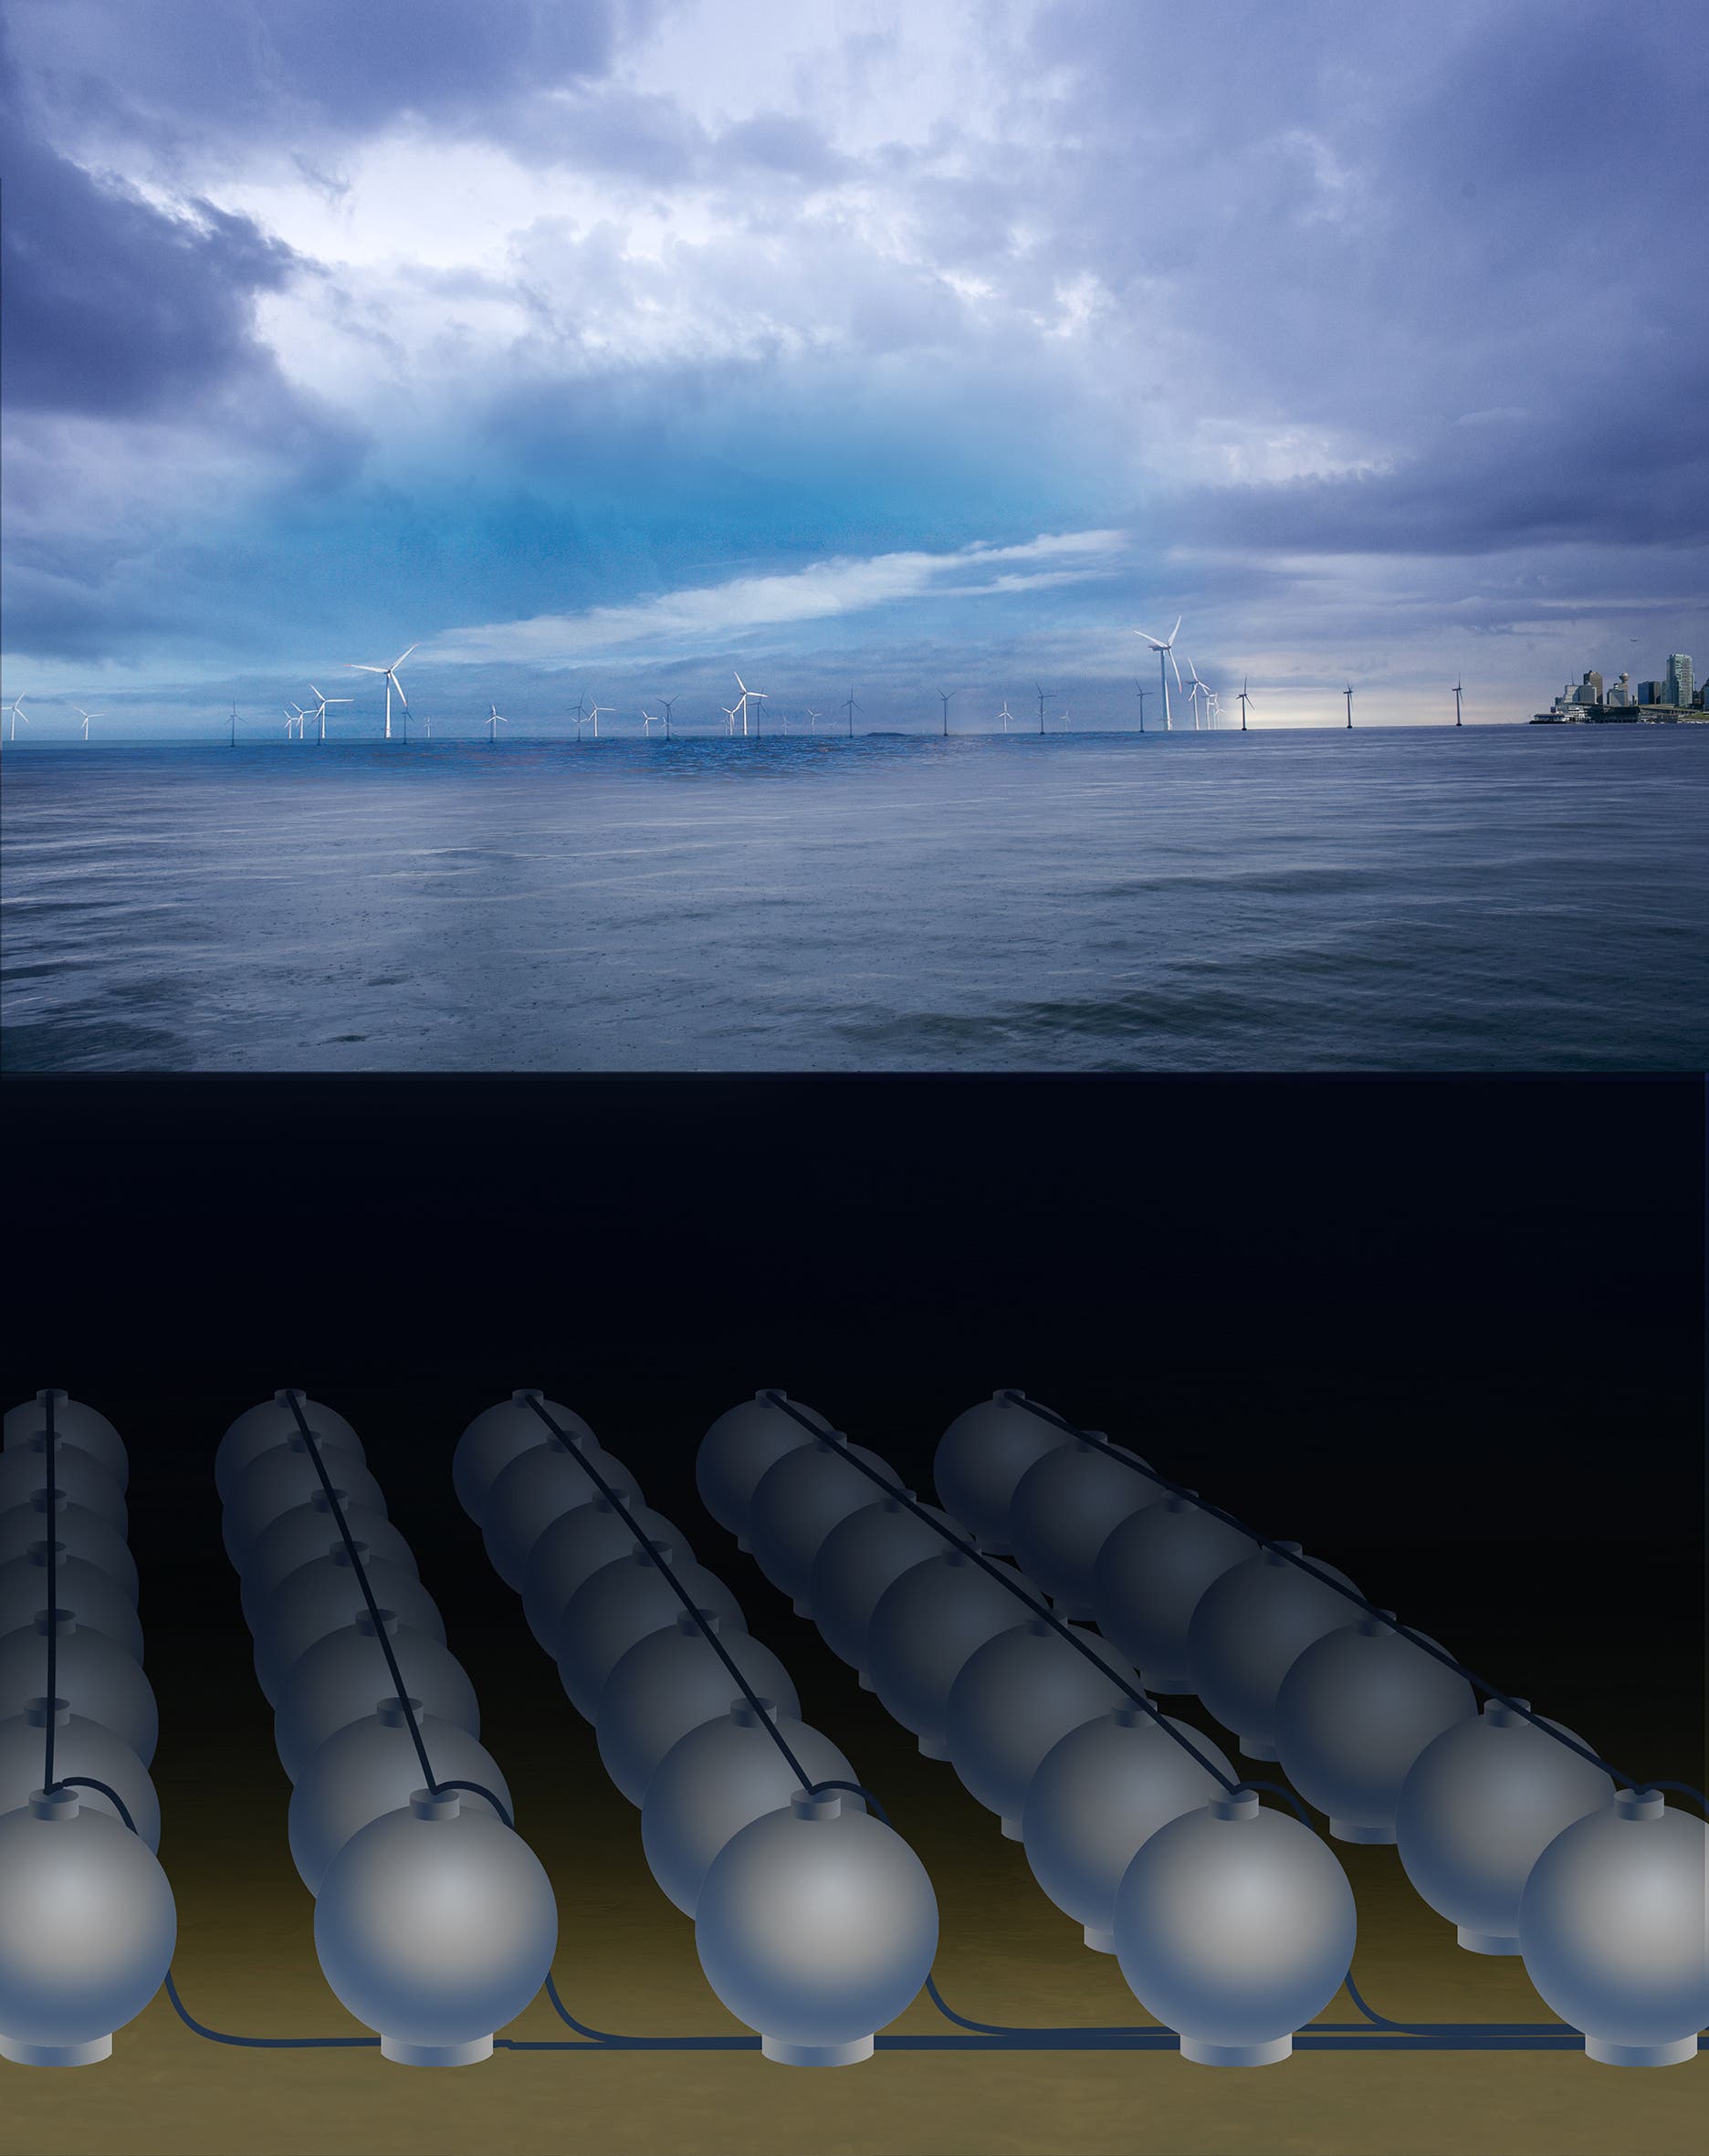 Konzept für ein Meer-Pumpspeicherkraftwerk mit vielen Kugelspeichern zur Zwischenspeicherung von Offshore-Strom